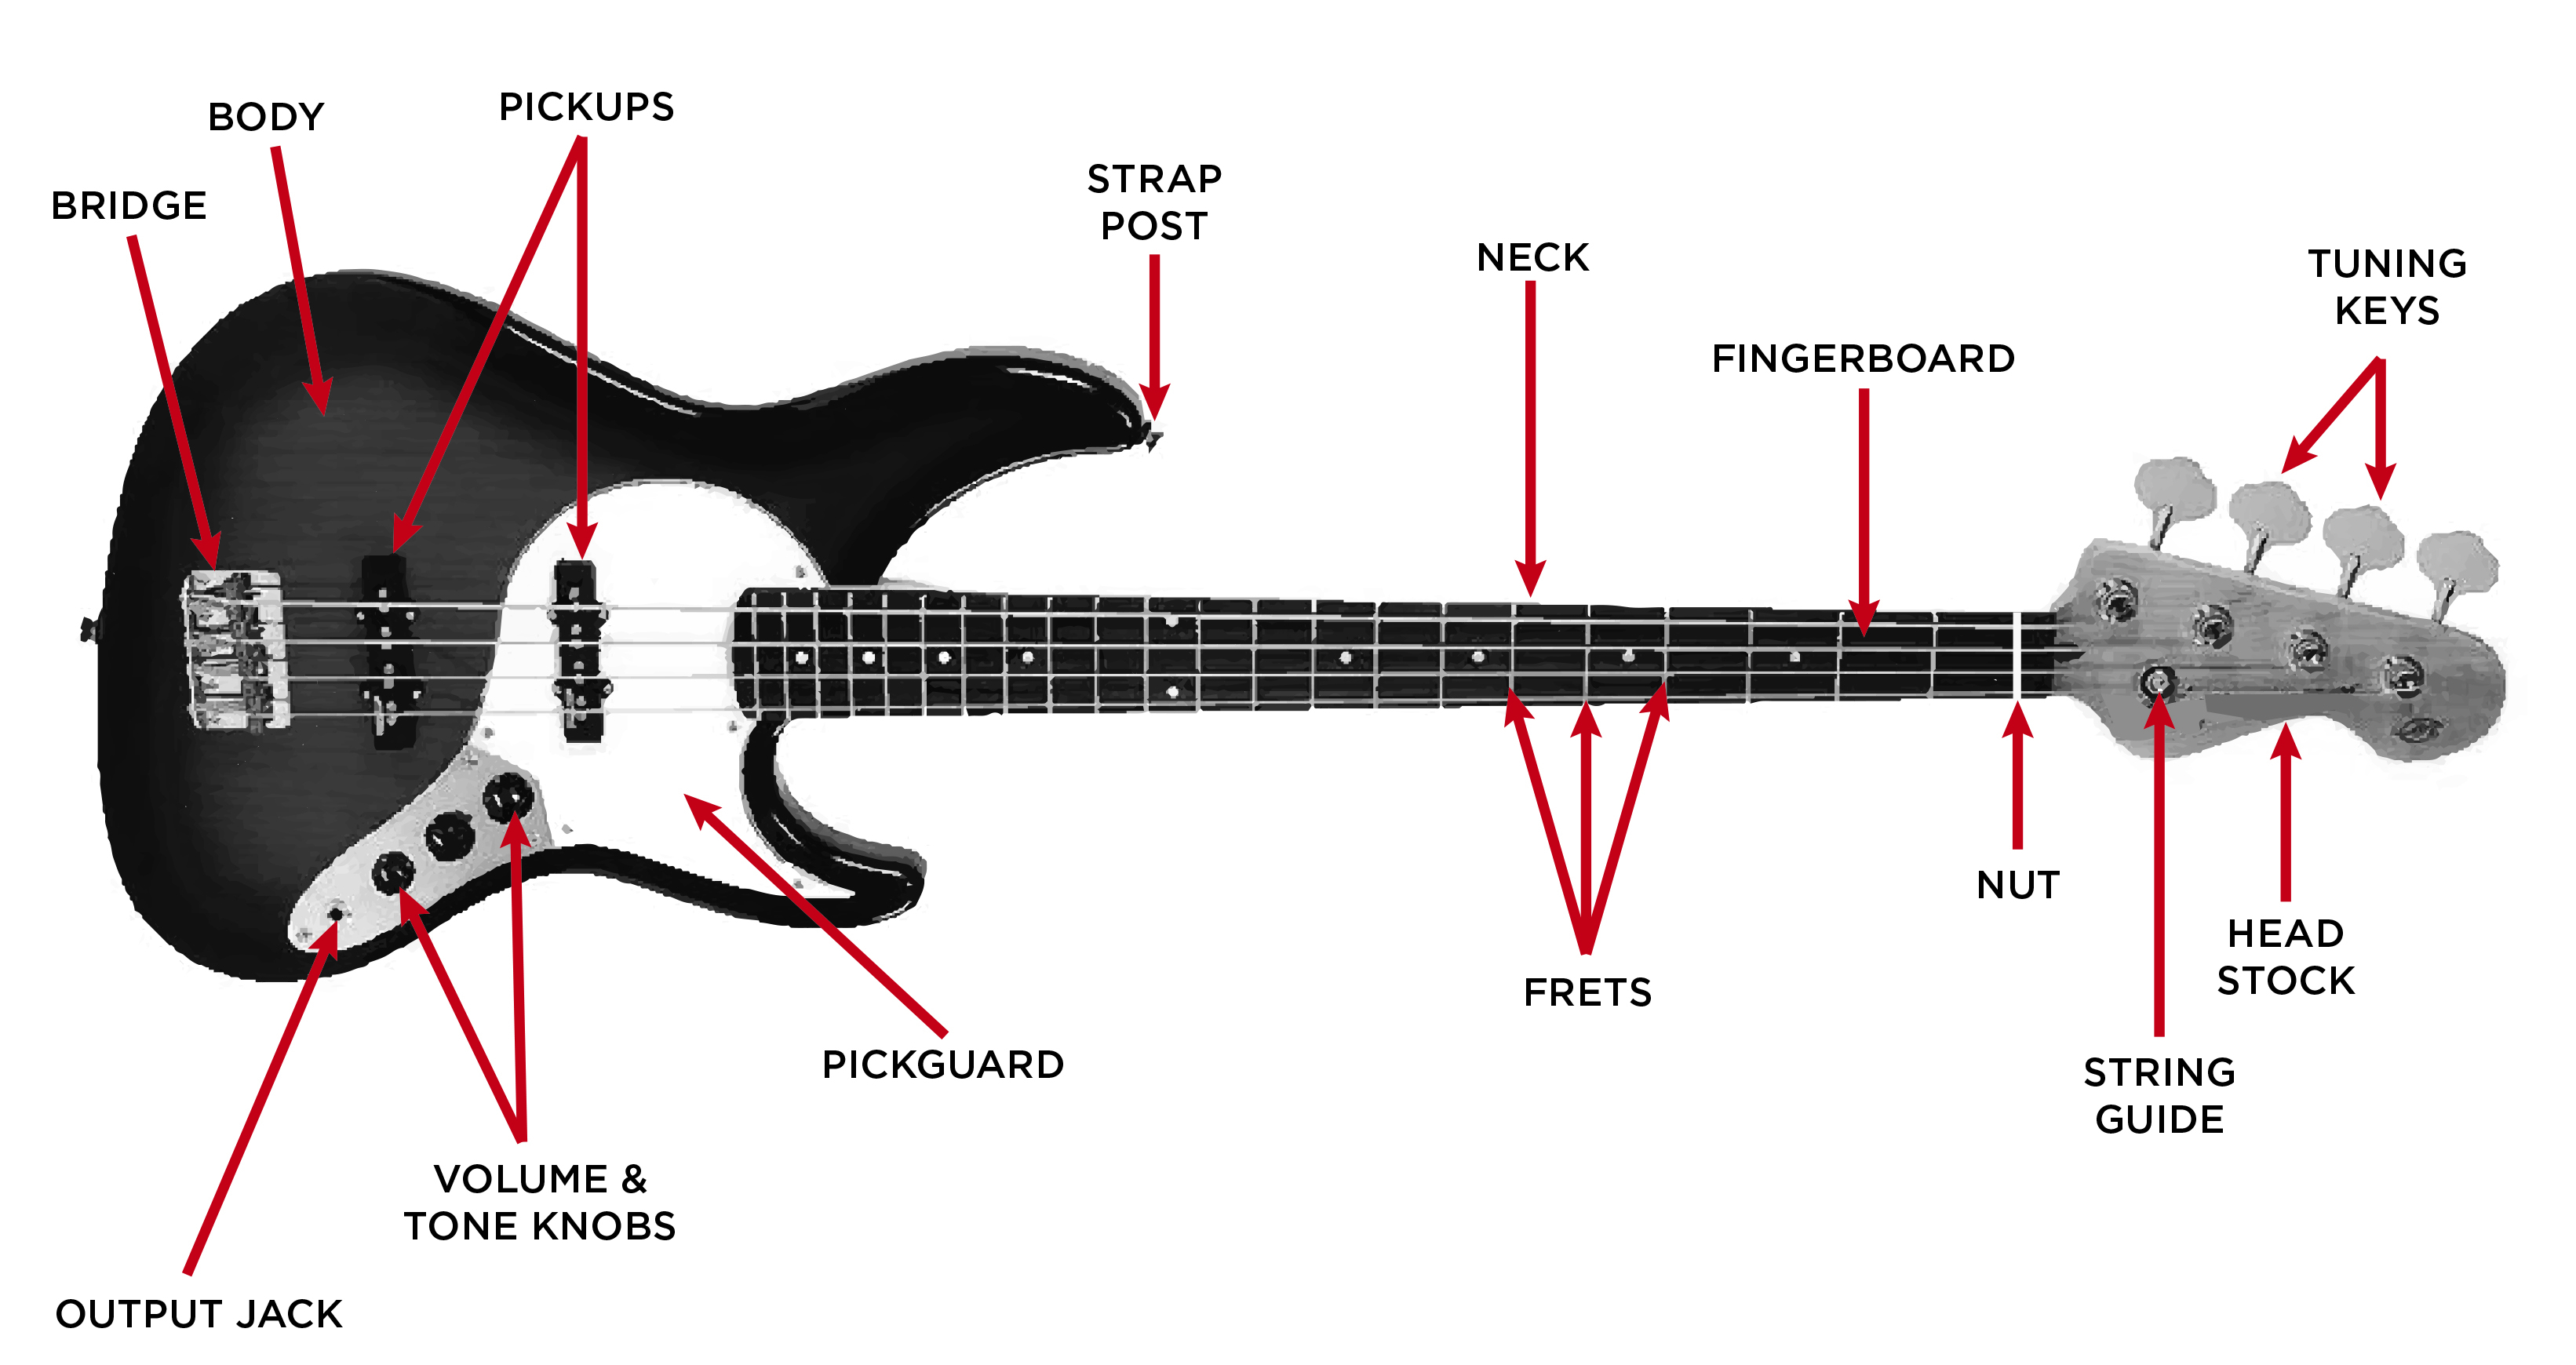 Bass Guitar Buyer's Guide